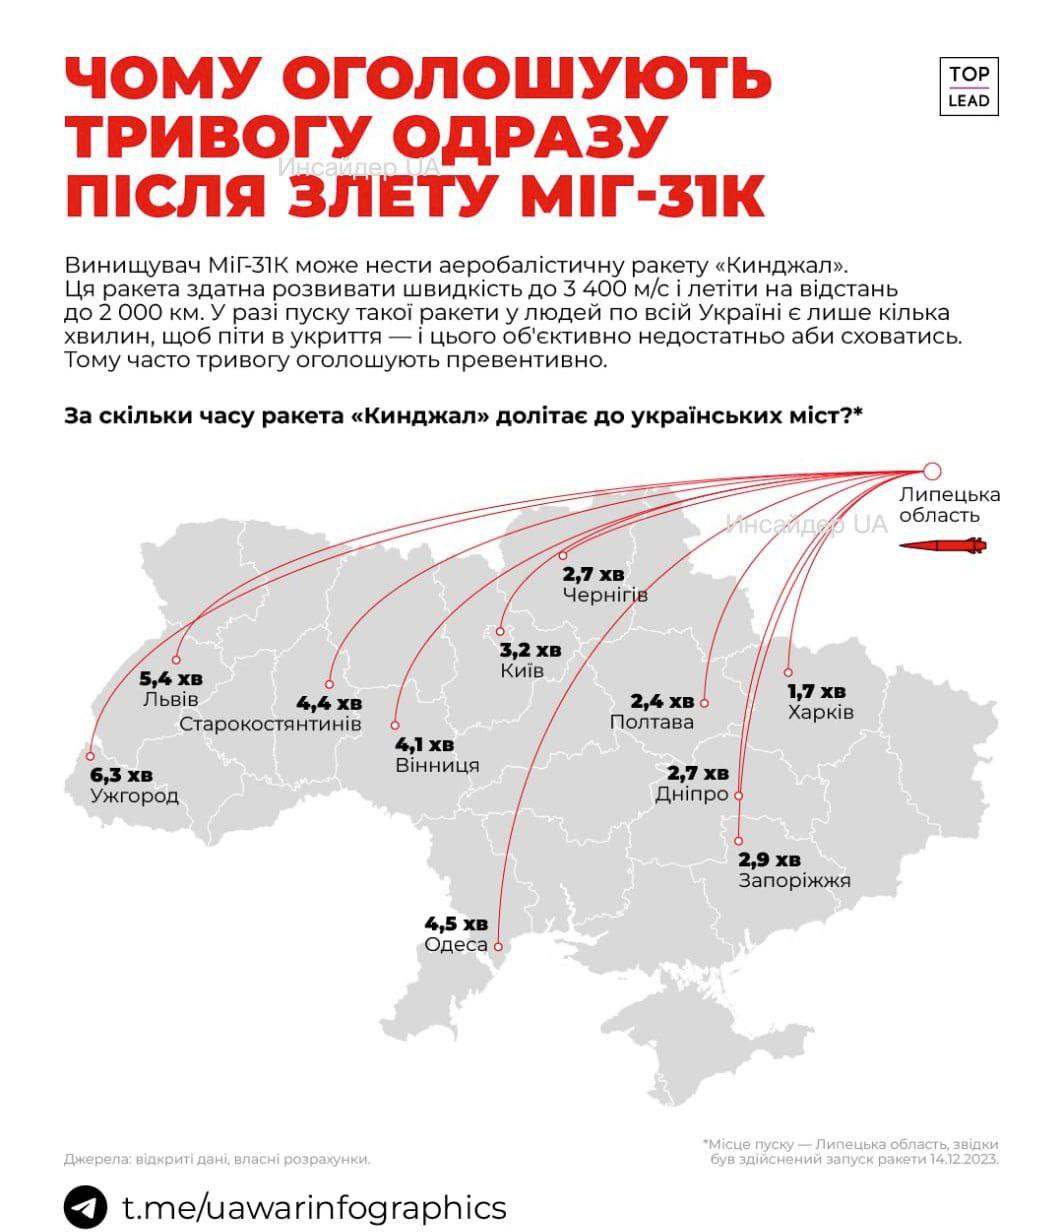 Время подлёта Кинжалов к городам Украины из Липецкой области (КАРТА)